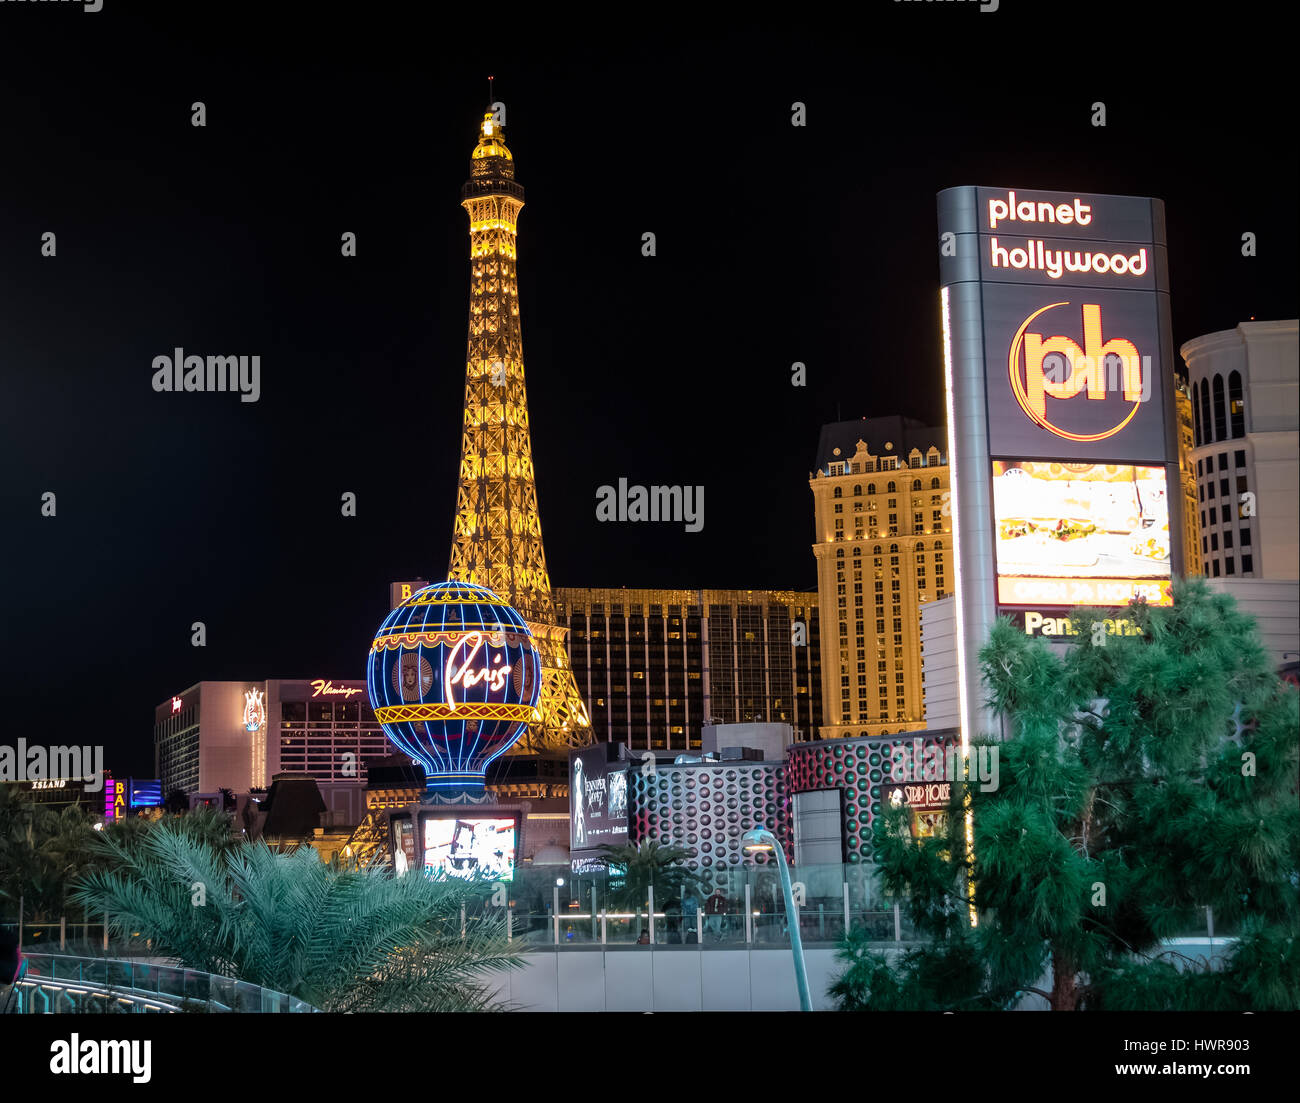 Las Vegas Strip and Paris Hotel Casino at night - Las Vegas, Nevada, USA Stock Photo